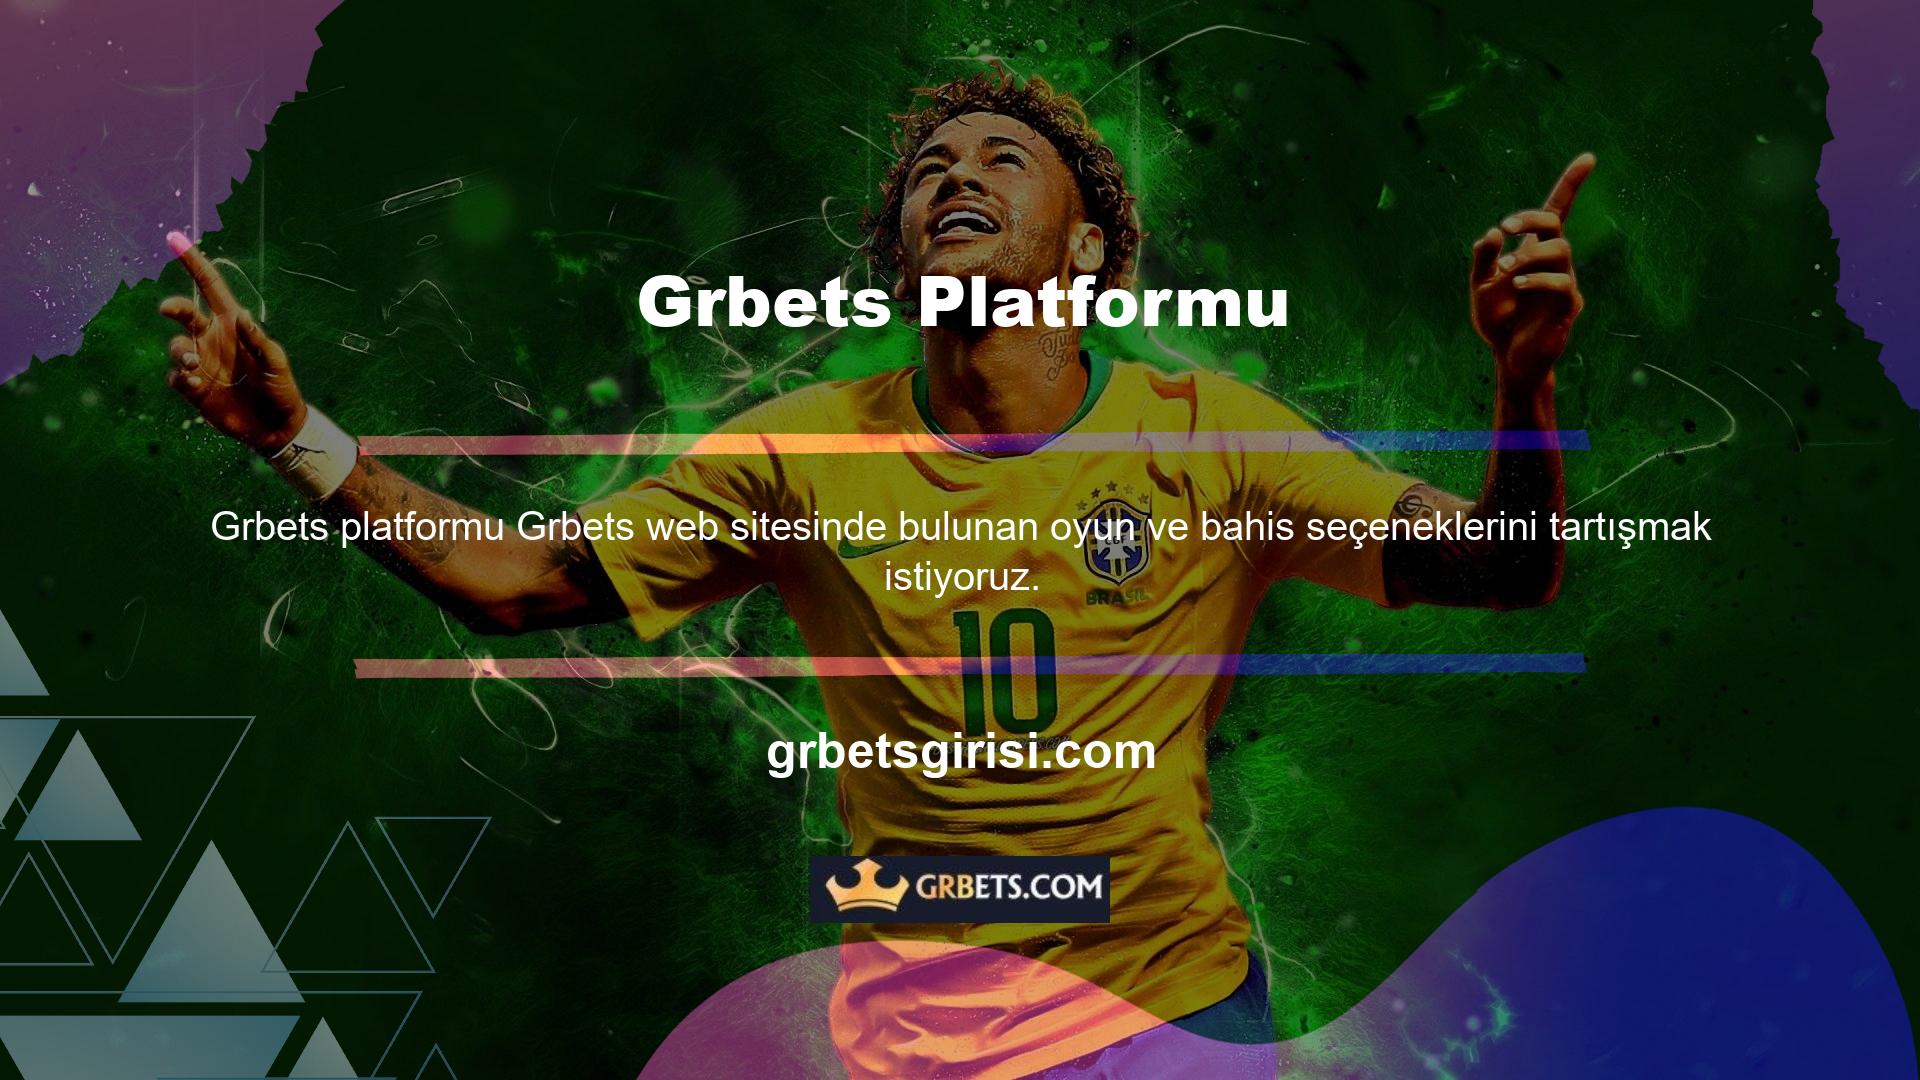 Araştırdığımda Türkçe destekleyen yabancı bahis şirketi Grbets diğer birçok platforma göre daha az oyunu olduğu ortaya çıktı